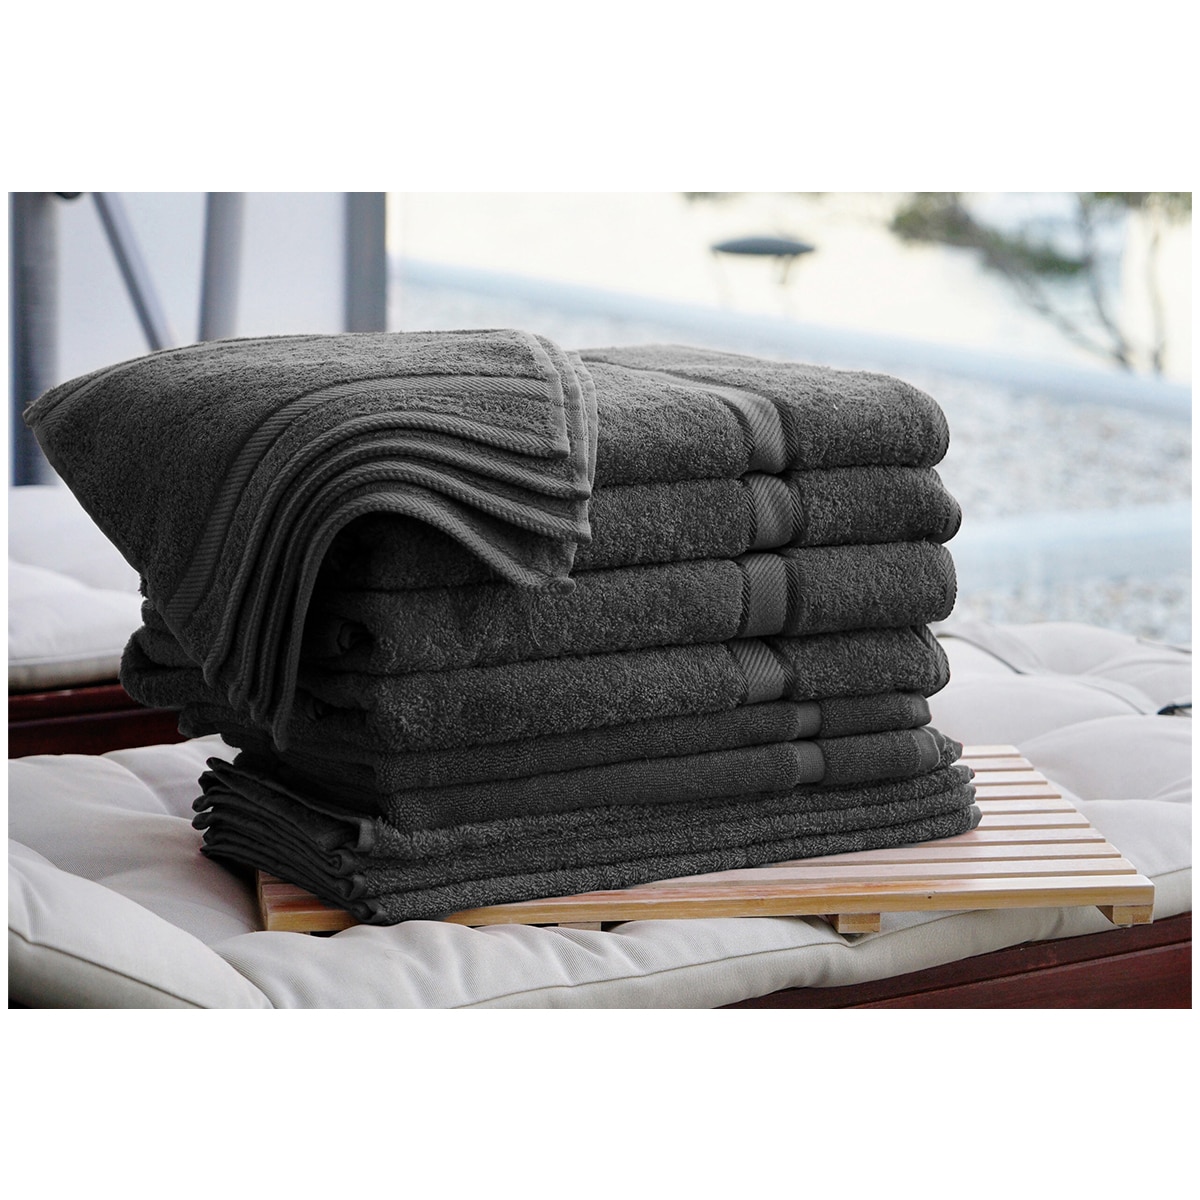 Kingtex Plain dyed 100% Combed Cotton towel range 550gsm Bath Sheet set 14 piece - Black